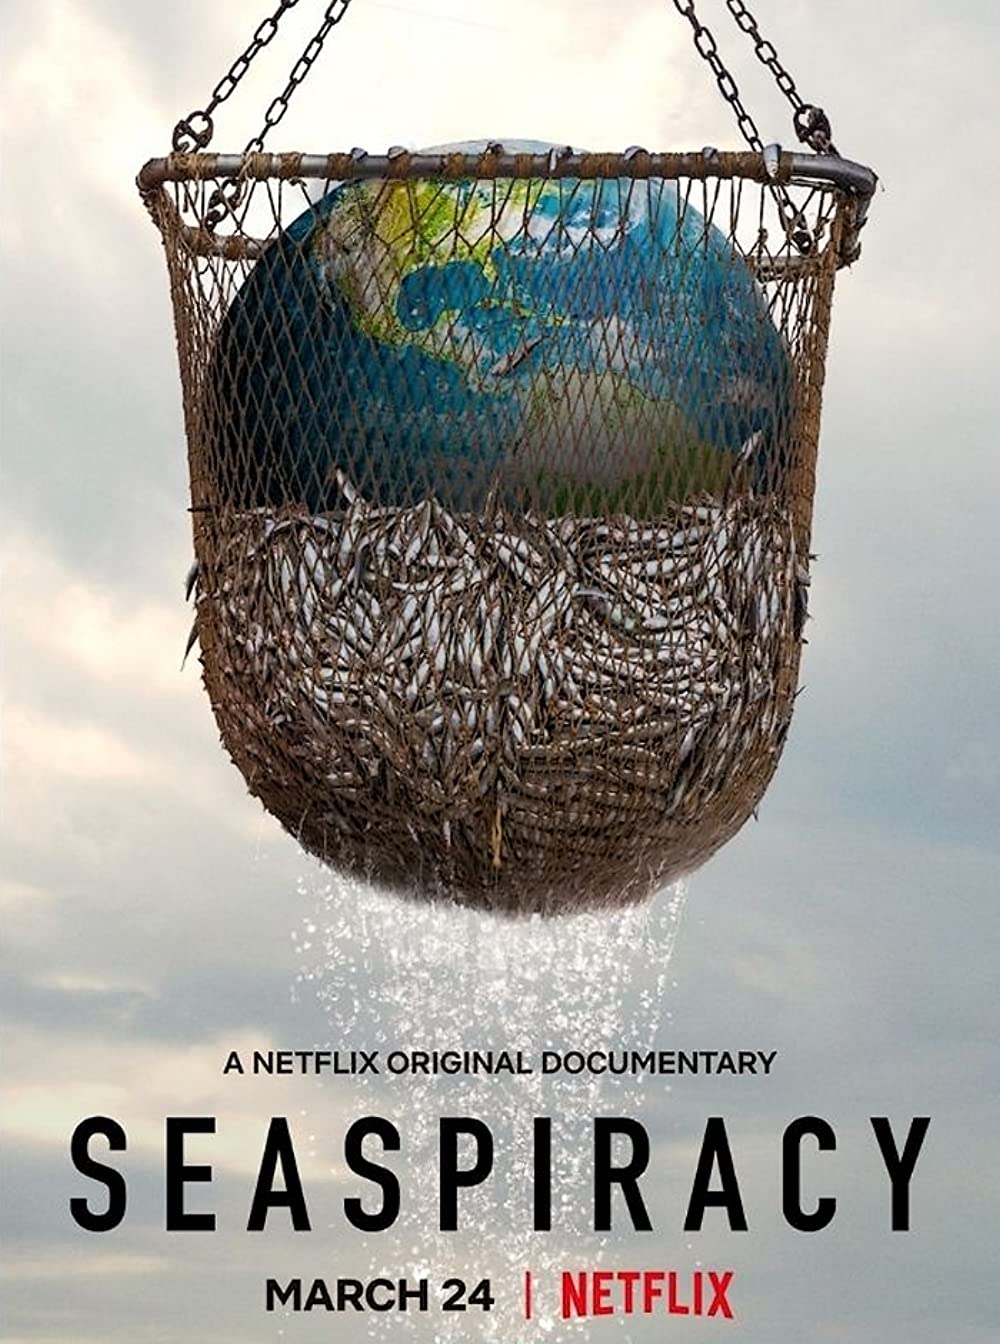 ดูหนังออนไลน์ฟรี ดูหนังใหม่ Netflix SEASPIRACY 2021 ใครทำร้ายทะเล moviehdfree